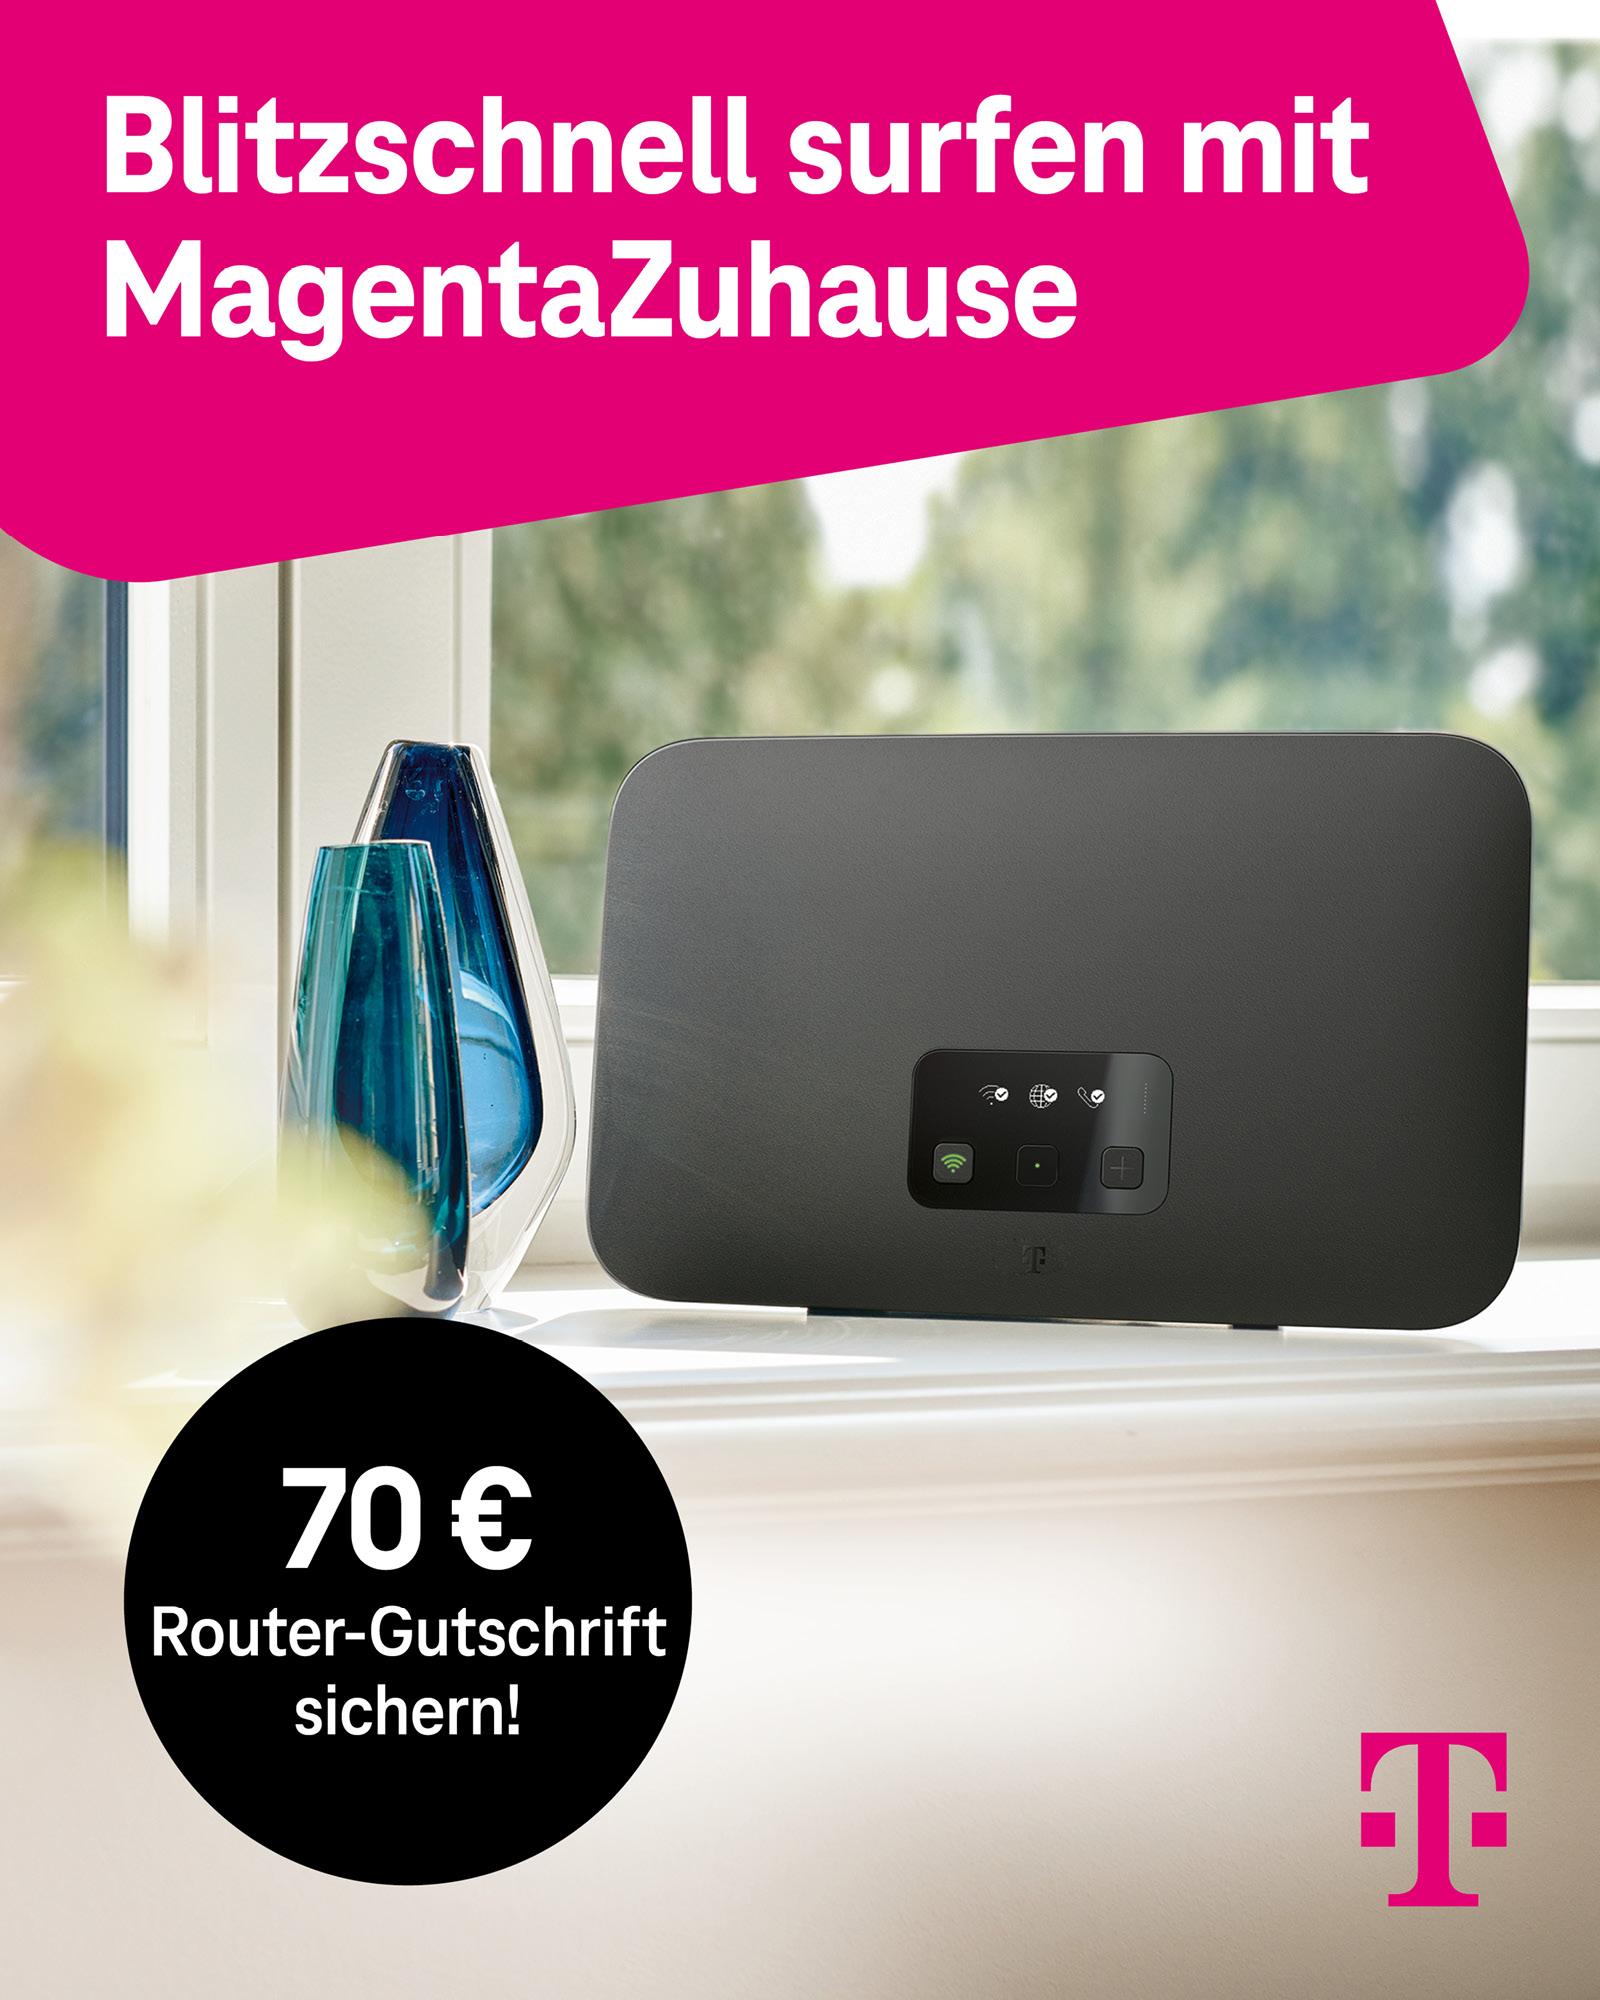 Telekom_MagentaZuhauseXL_Routergutschrift_FB